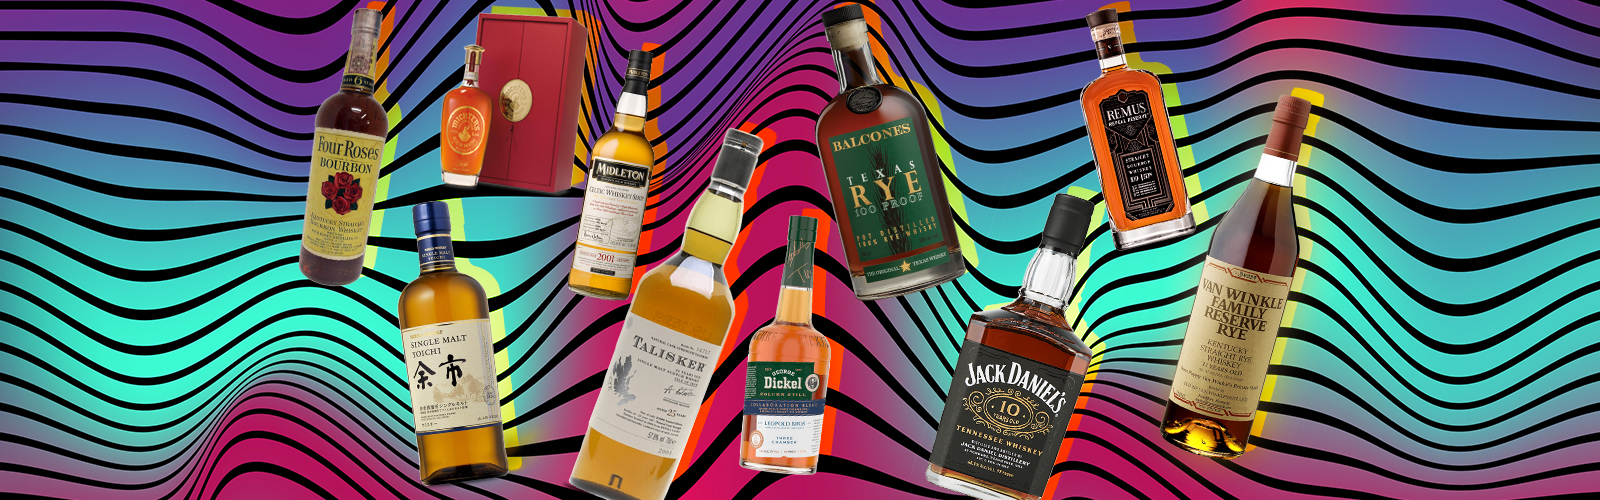 100 Best Whiskeys of 2021